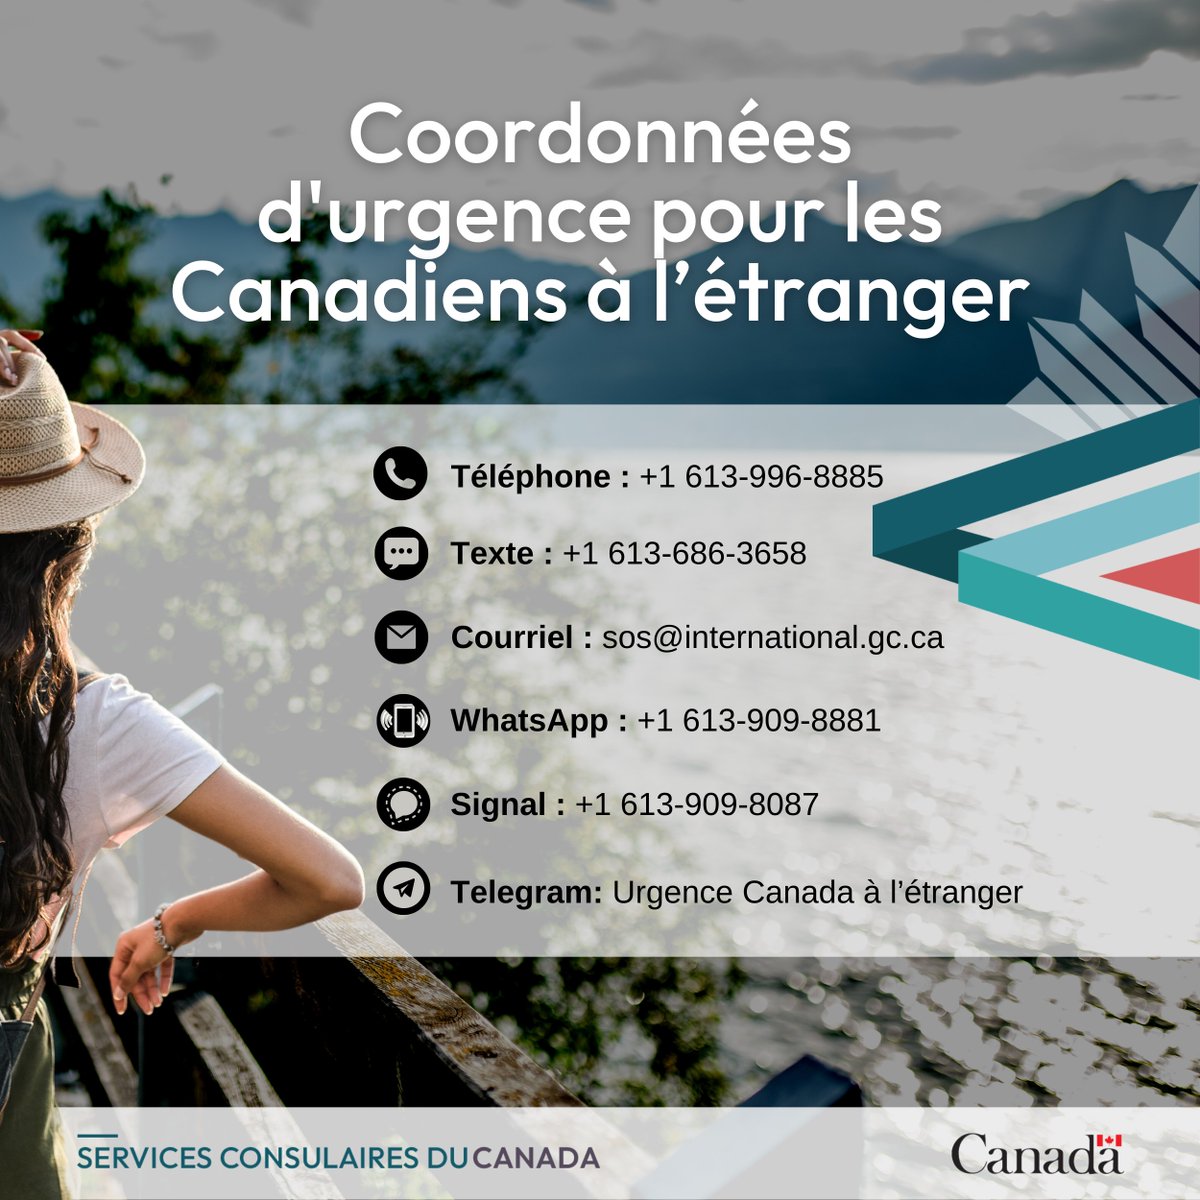 Vous êtes à l'extérieur du Canada et avez besoin d'une assistance consulaire? Nos agents consulaires sont là pour vous aider 24 heures sur 24 et 7 jours sur 7. Découvrez comment nous contacter en cas d'urgence : ow.ly/wyJ750R4HXF